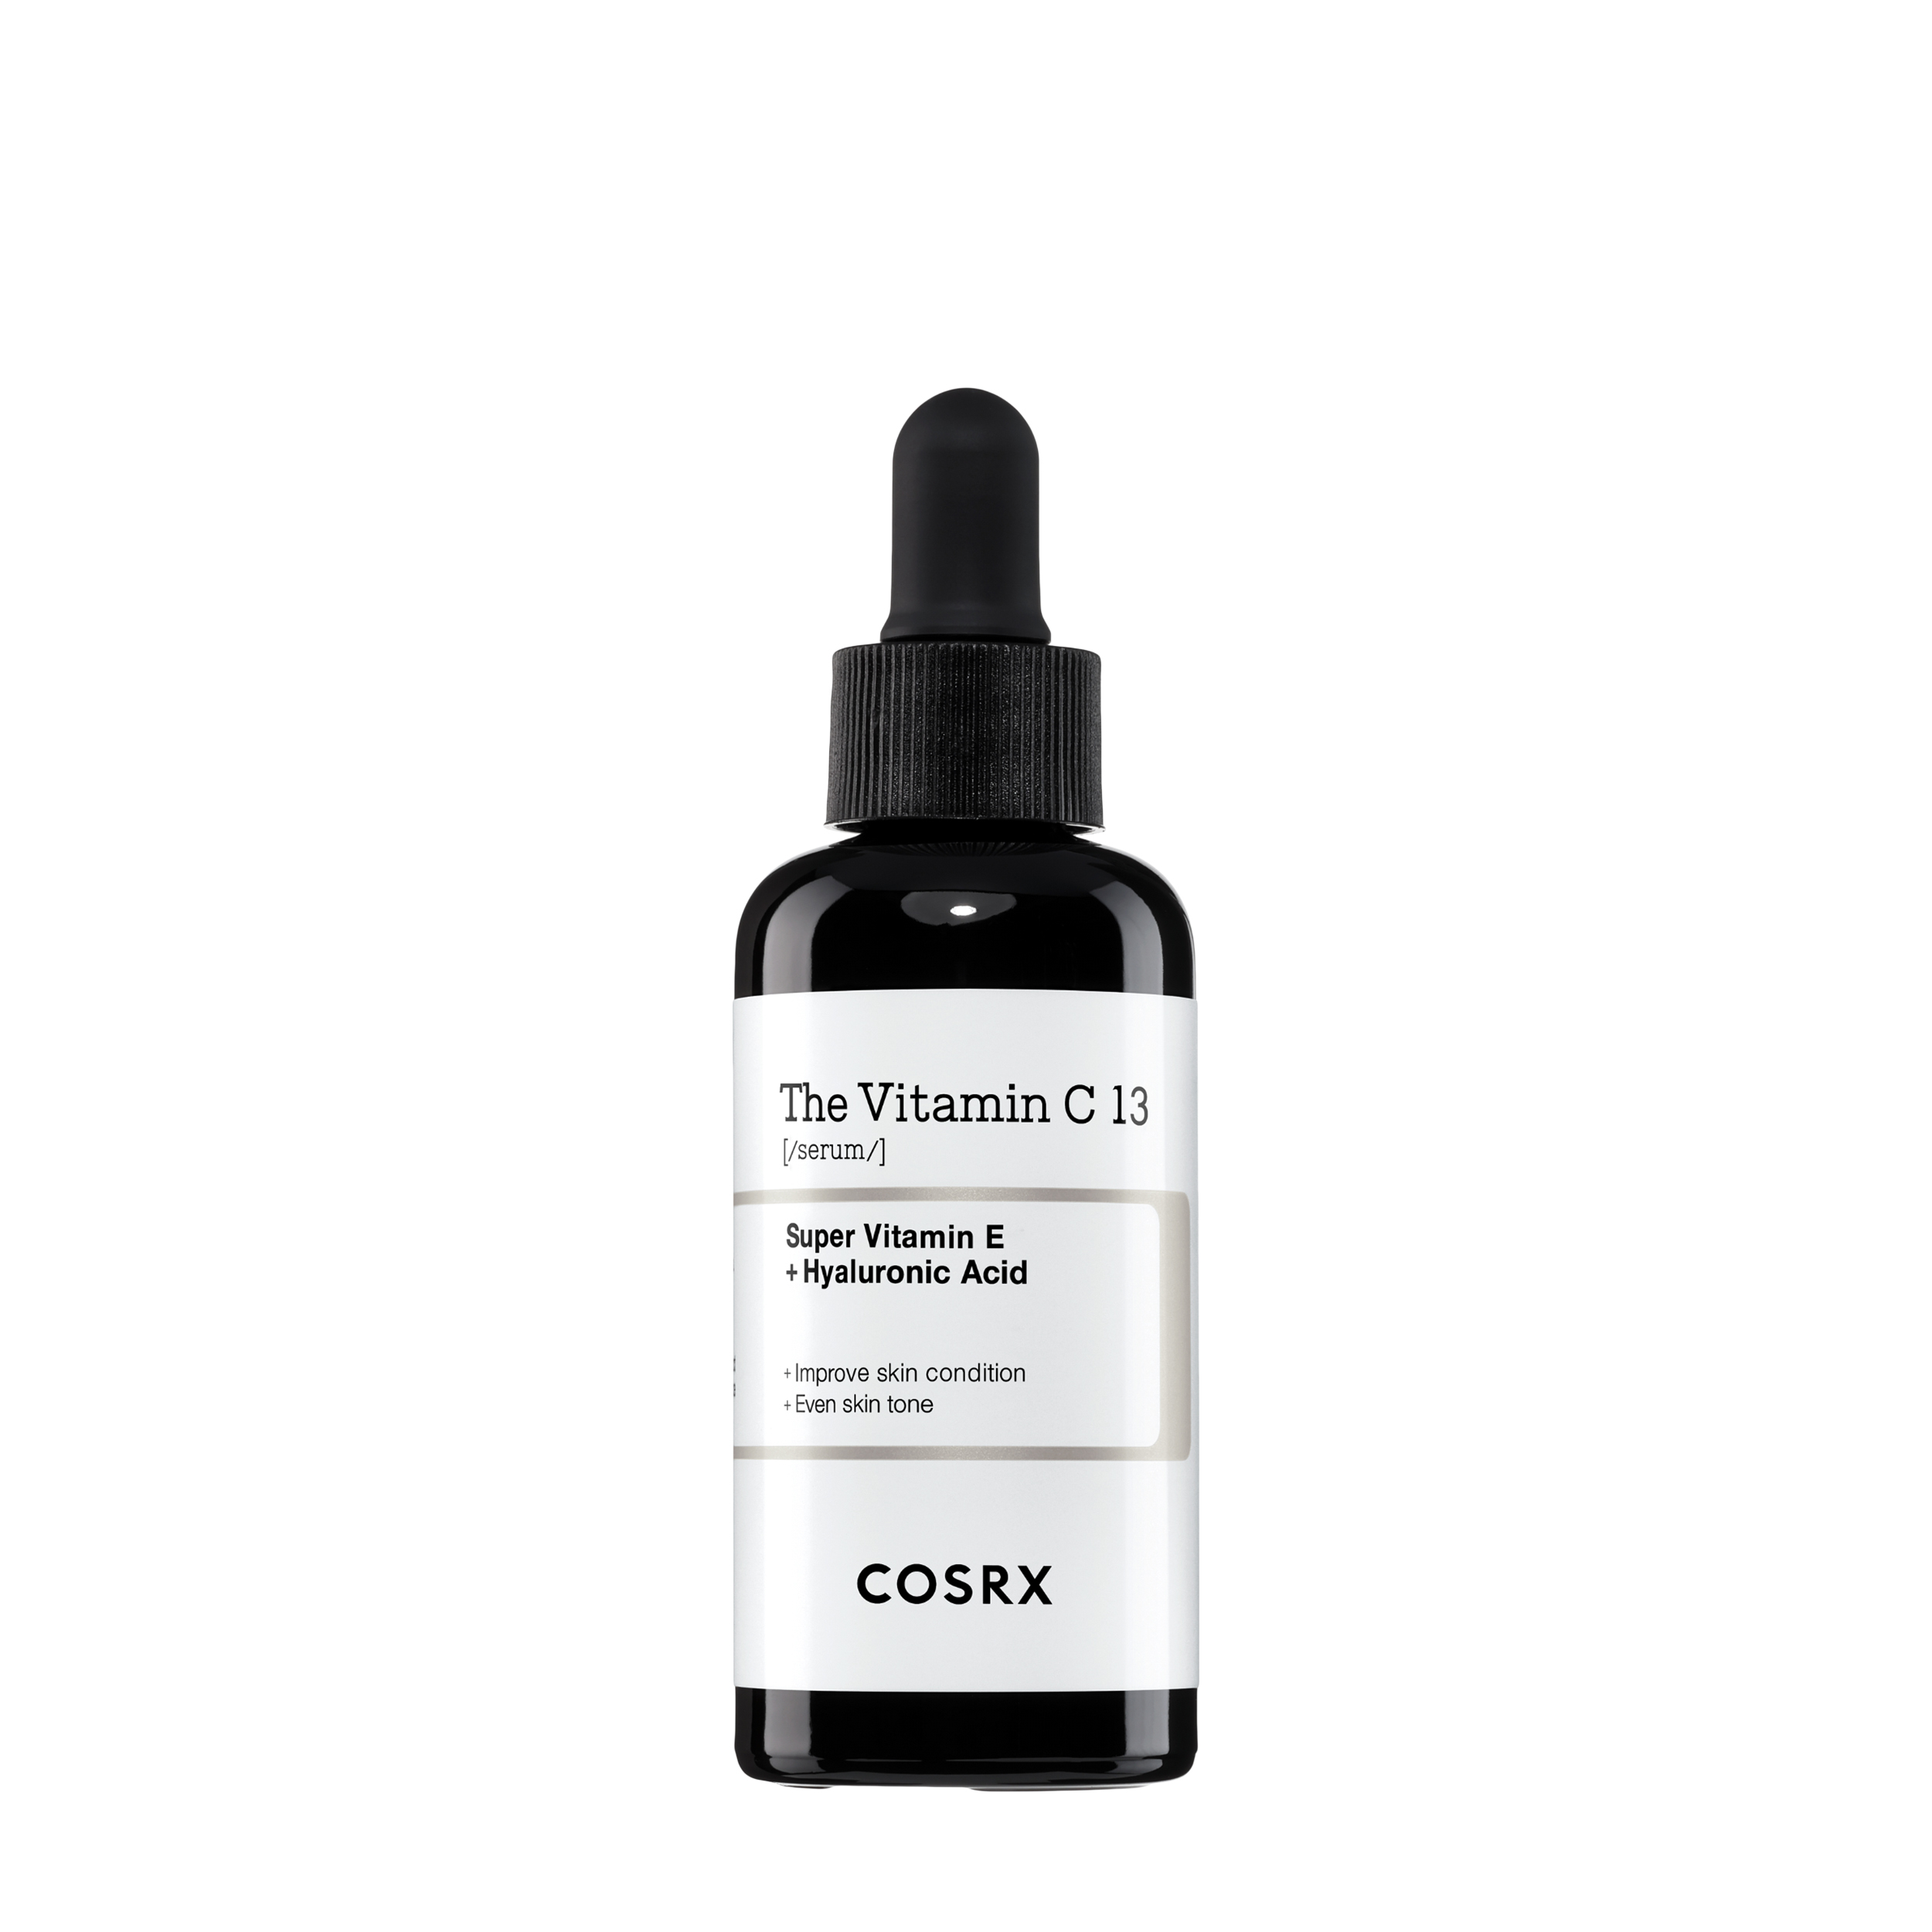 COSRX COSRX Антиоксидантная сыворотка для чувствительной кожи лица с 13% витамина C The Vitamin C 13 Serum 20 гр